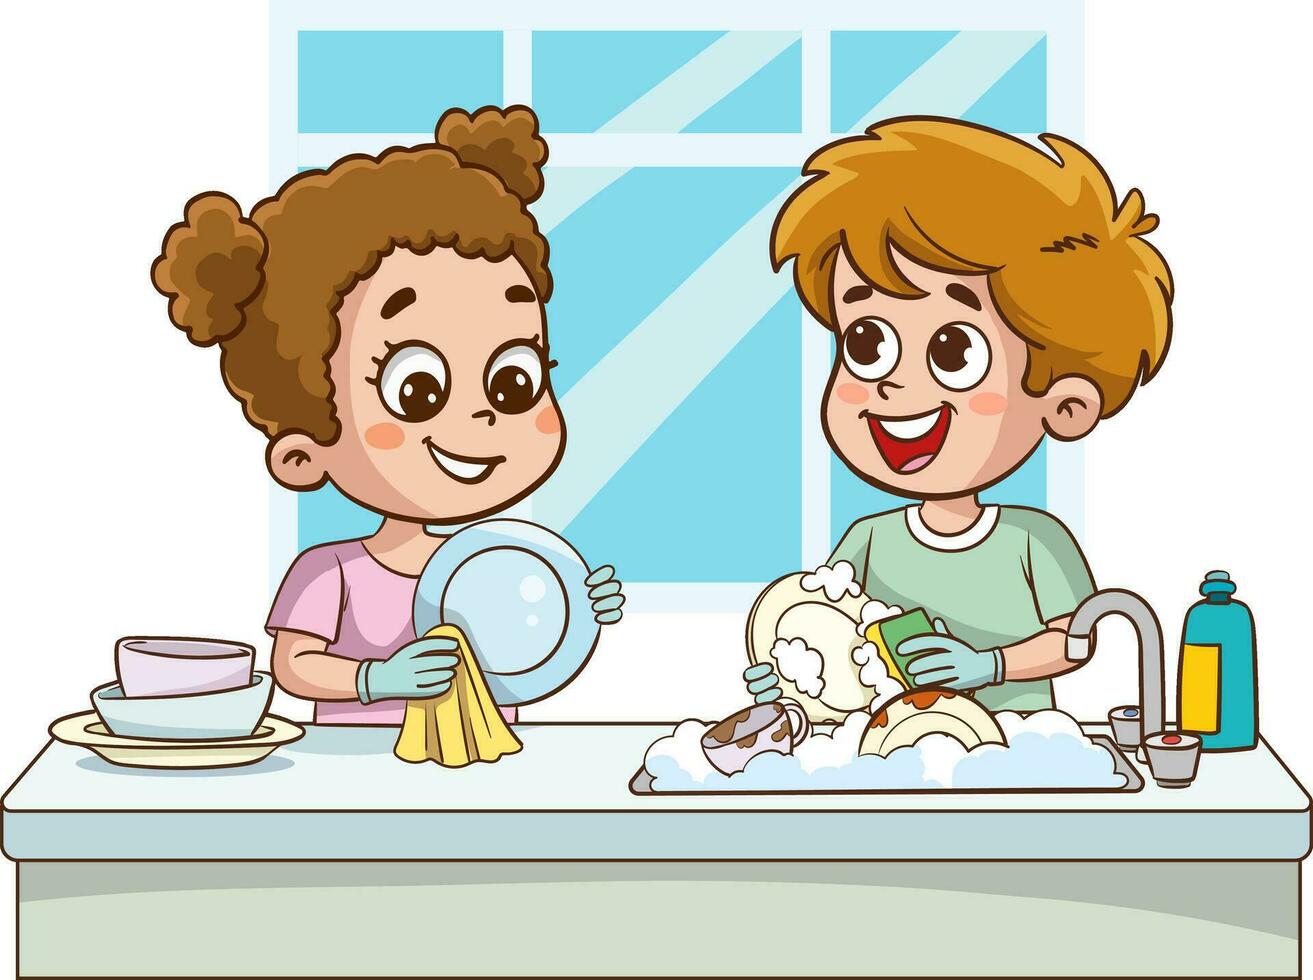 contento linda pequeño chico y niña Lavado plato juntos.felices pequeño niños haciendo tareas del hogar y limpieza juntos vector